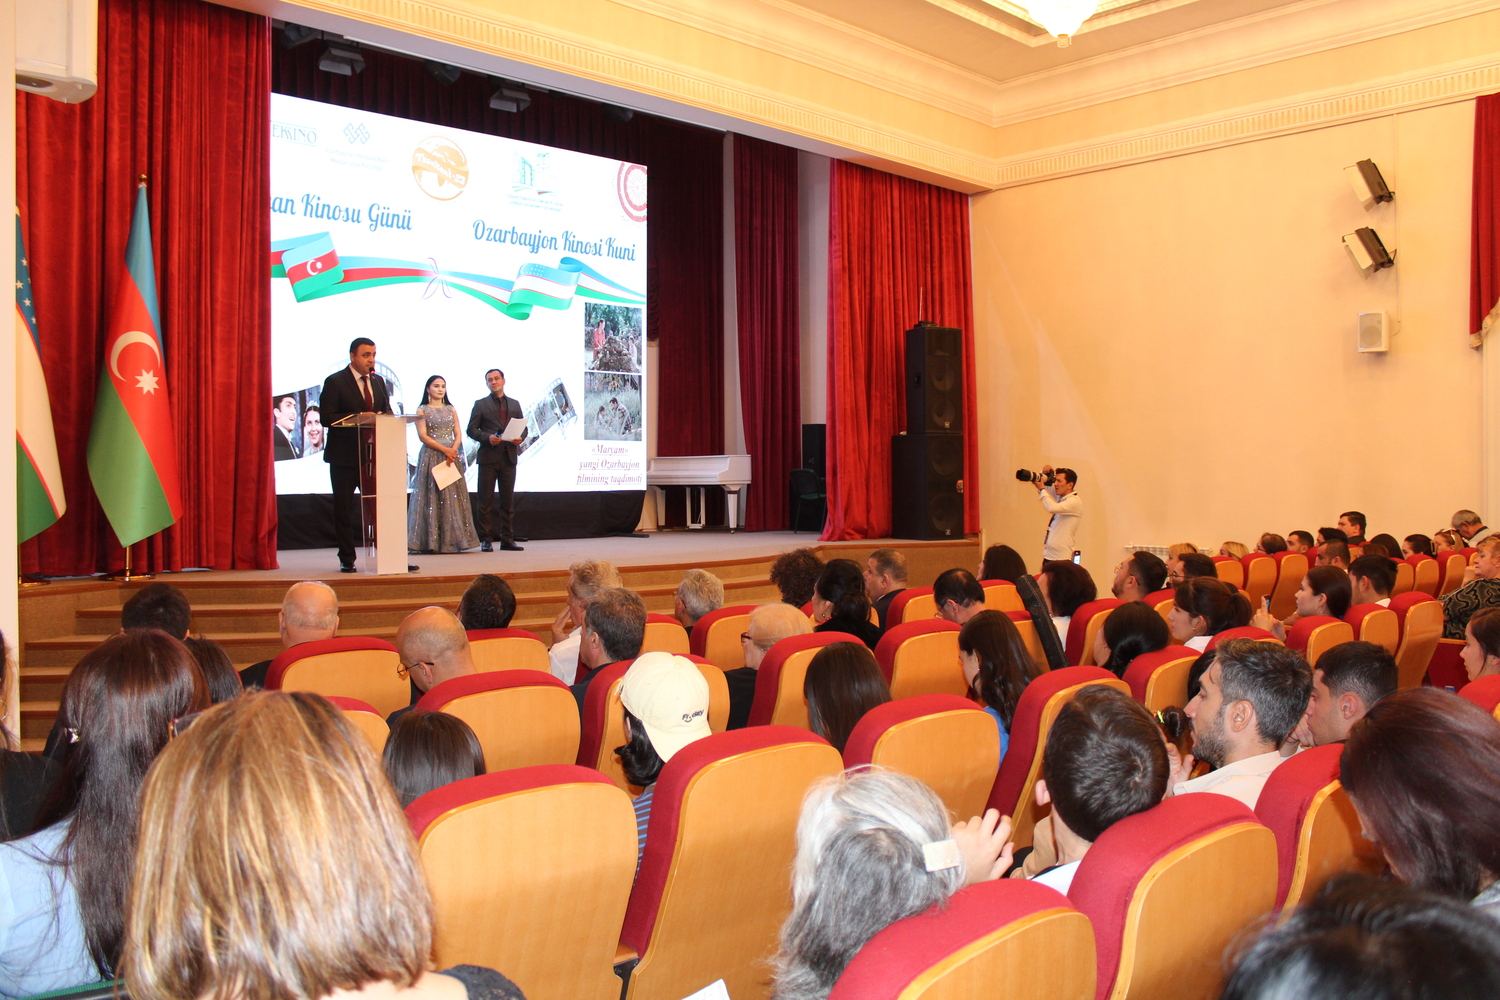 В Узбекистане состоялось открытие Дней азербайджанского кино (ФОТО)